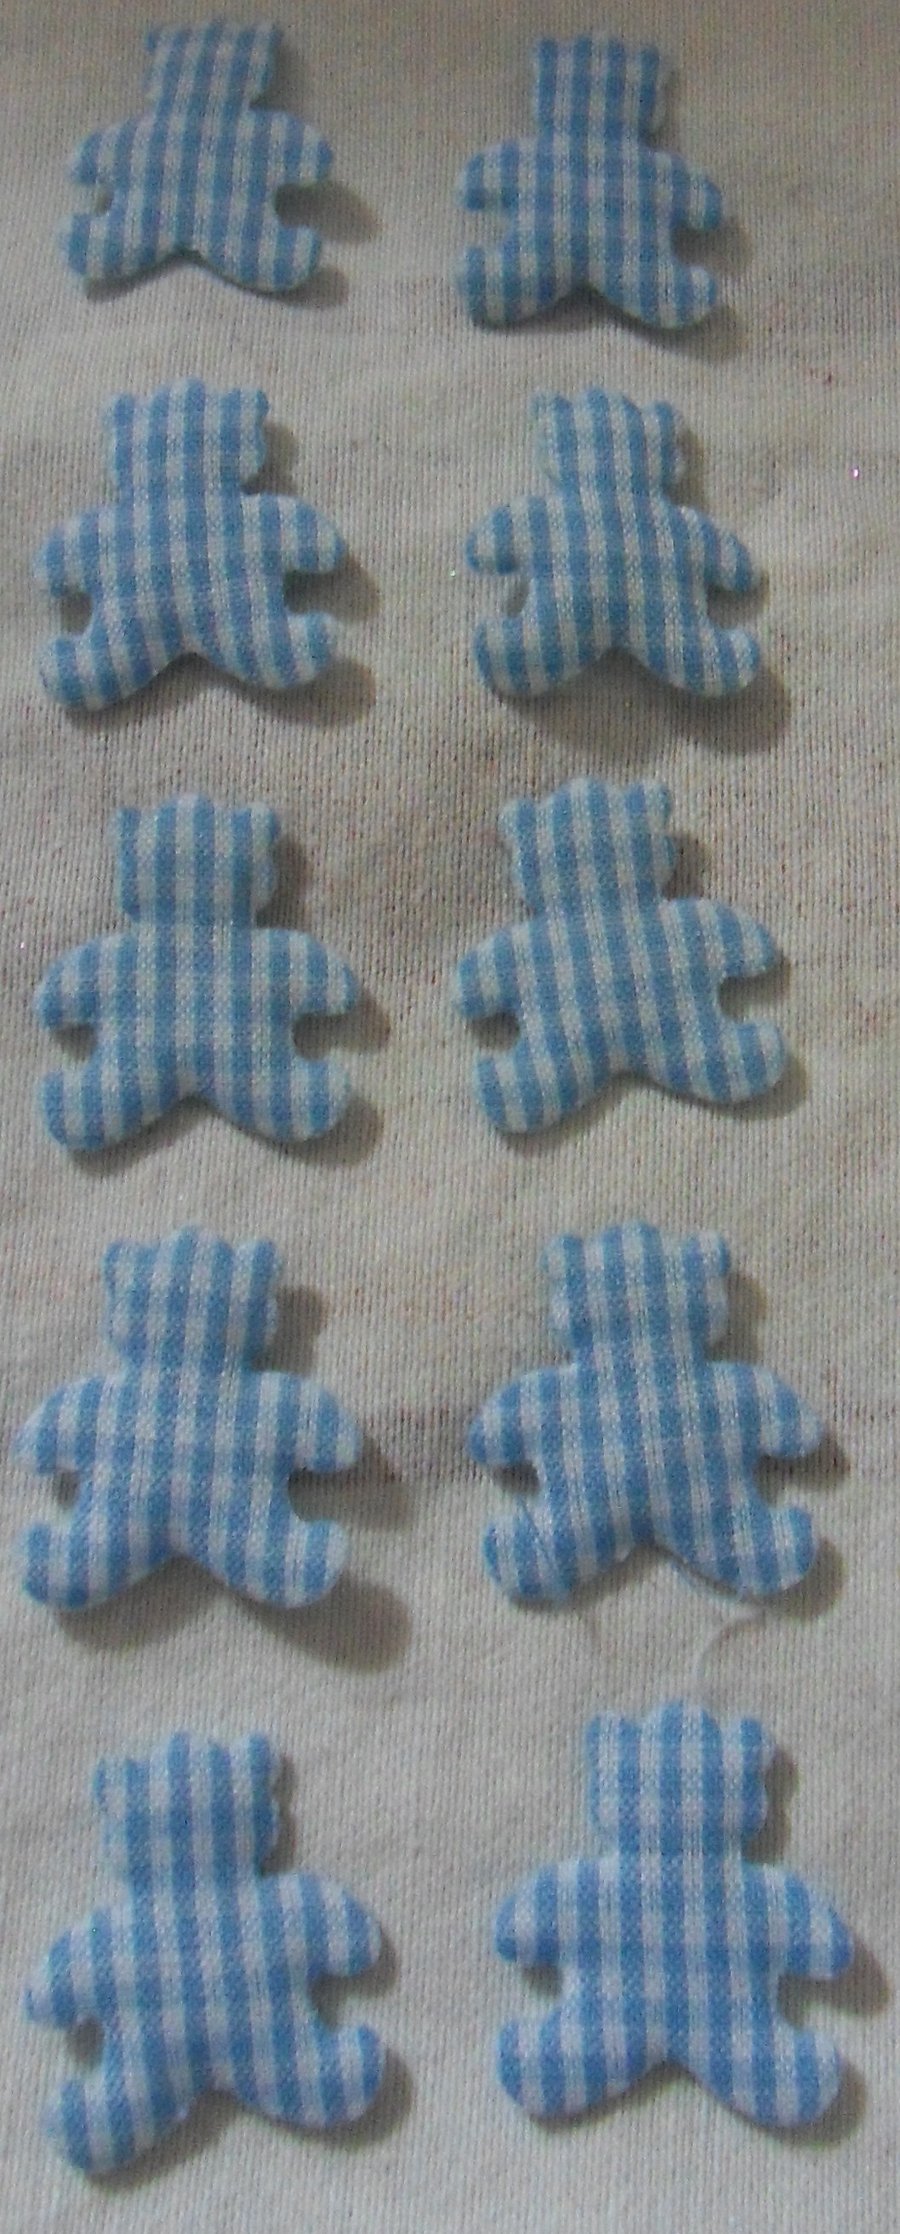 10 Blue gingham teddy bear embellishments. Approx 1"